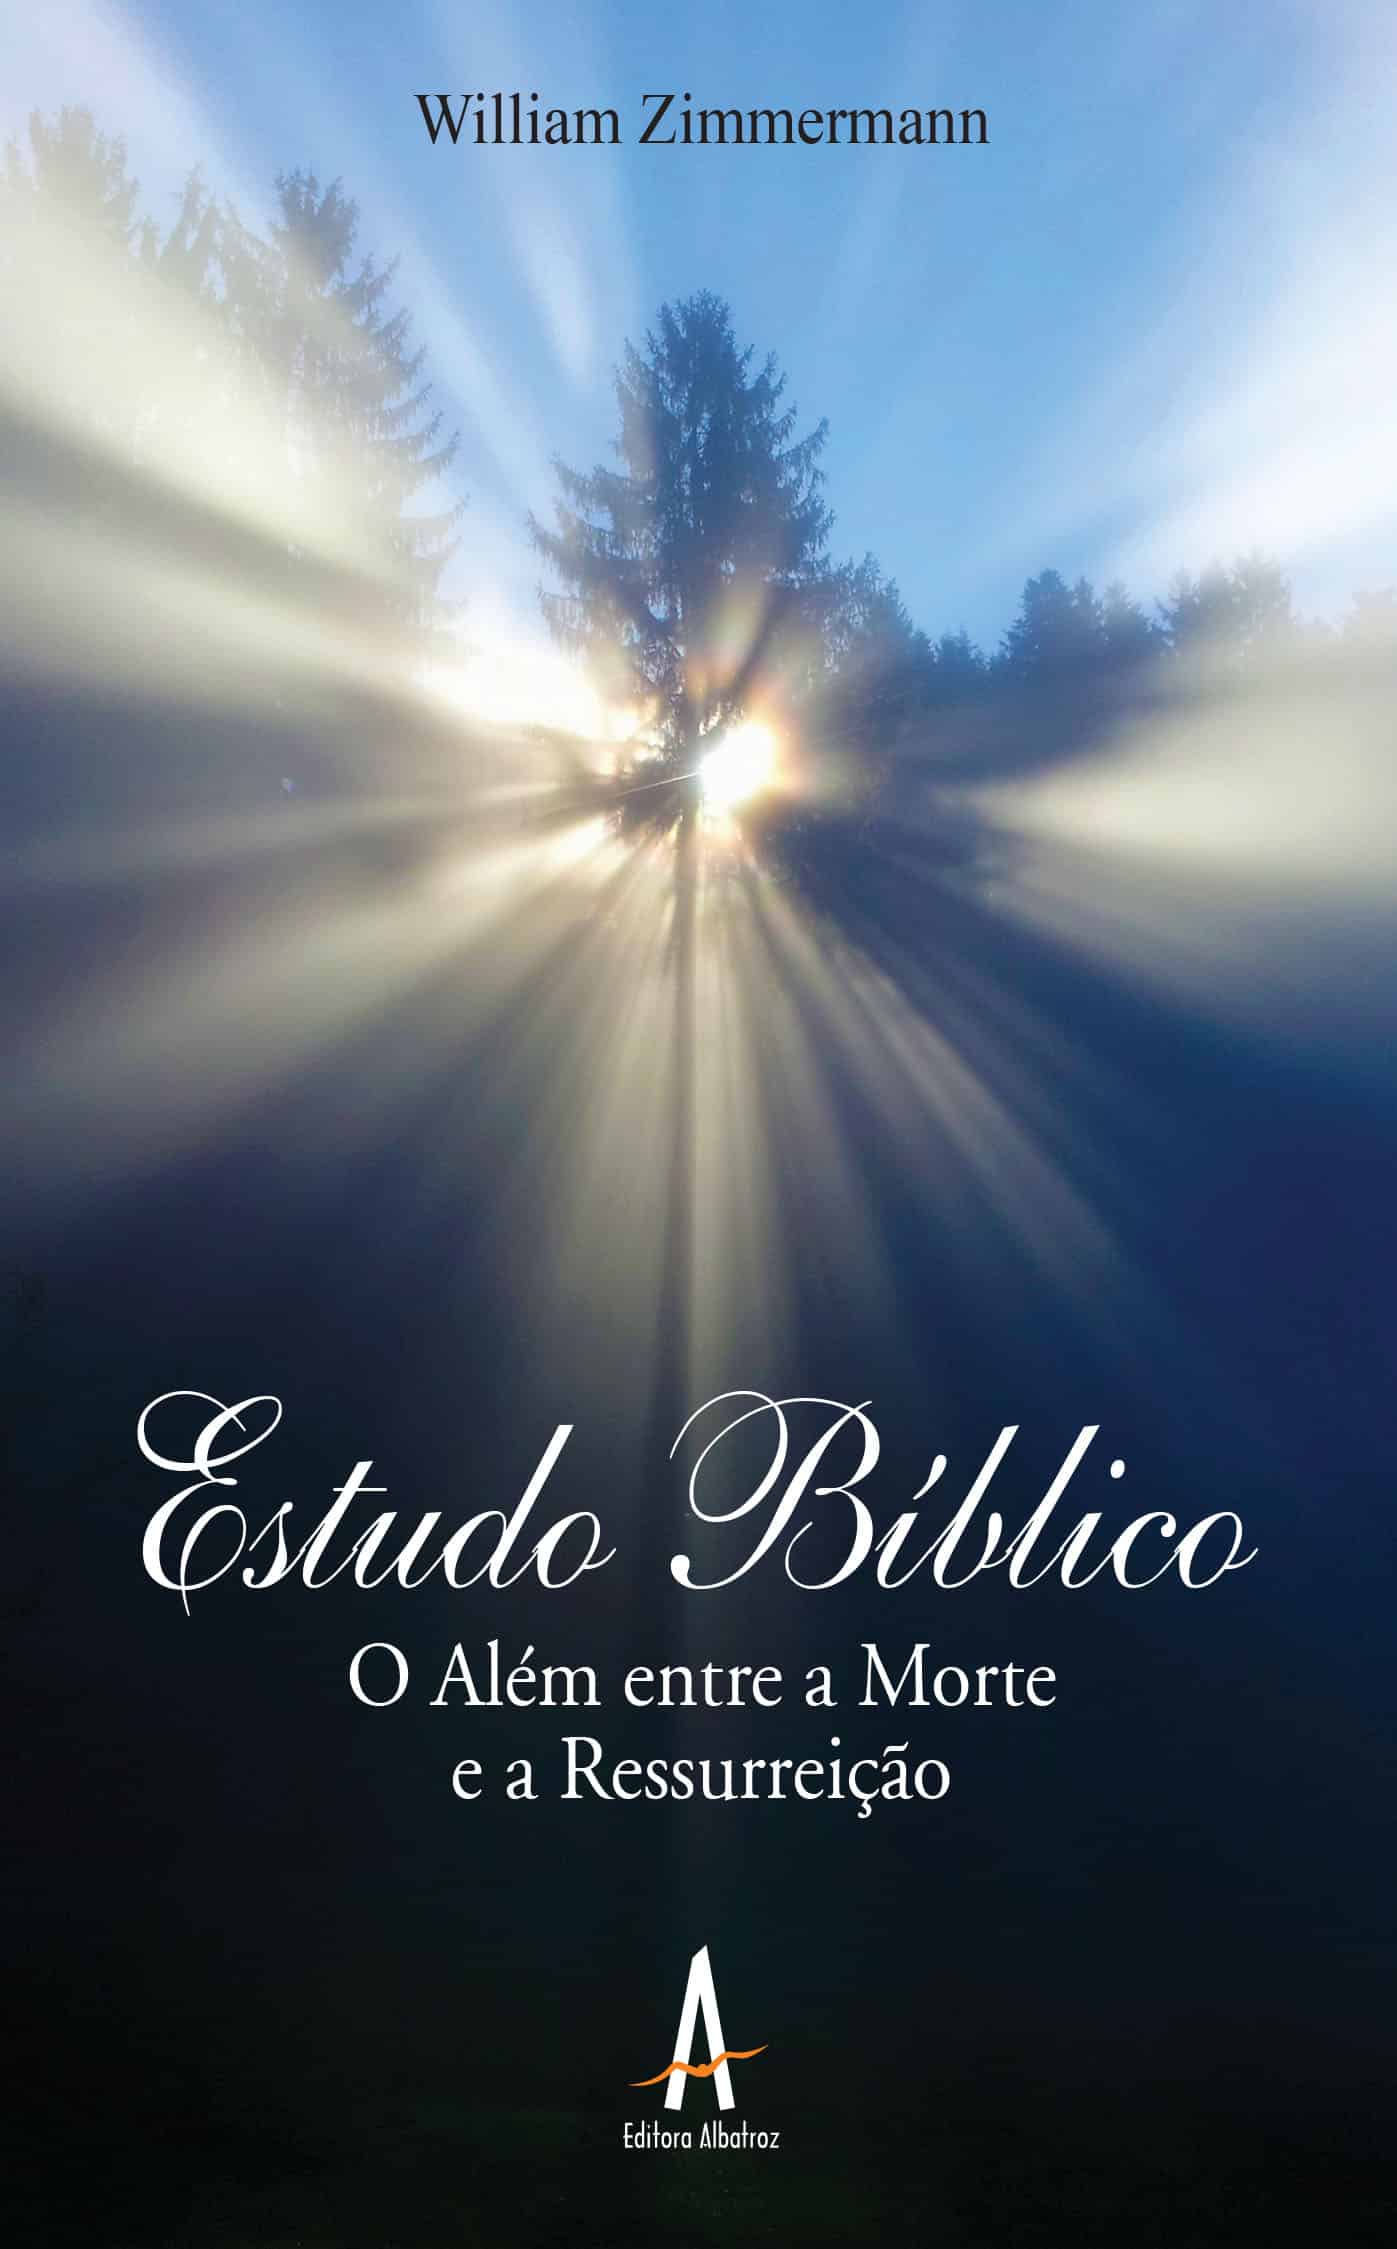 Estudo Bíblico: o além entre a morte e a ressurreição editora albatroz publicação como publicar seu livro meu publique